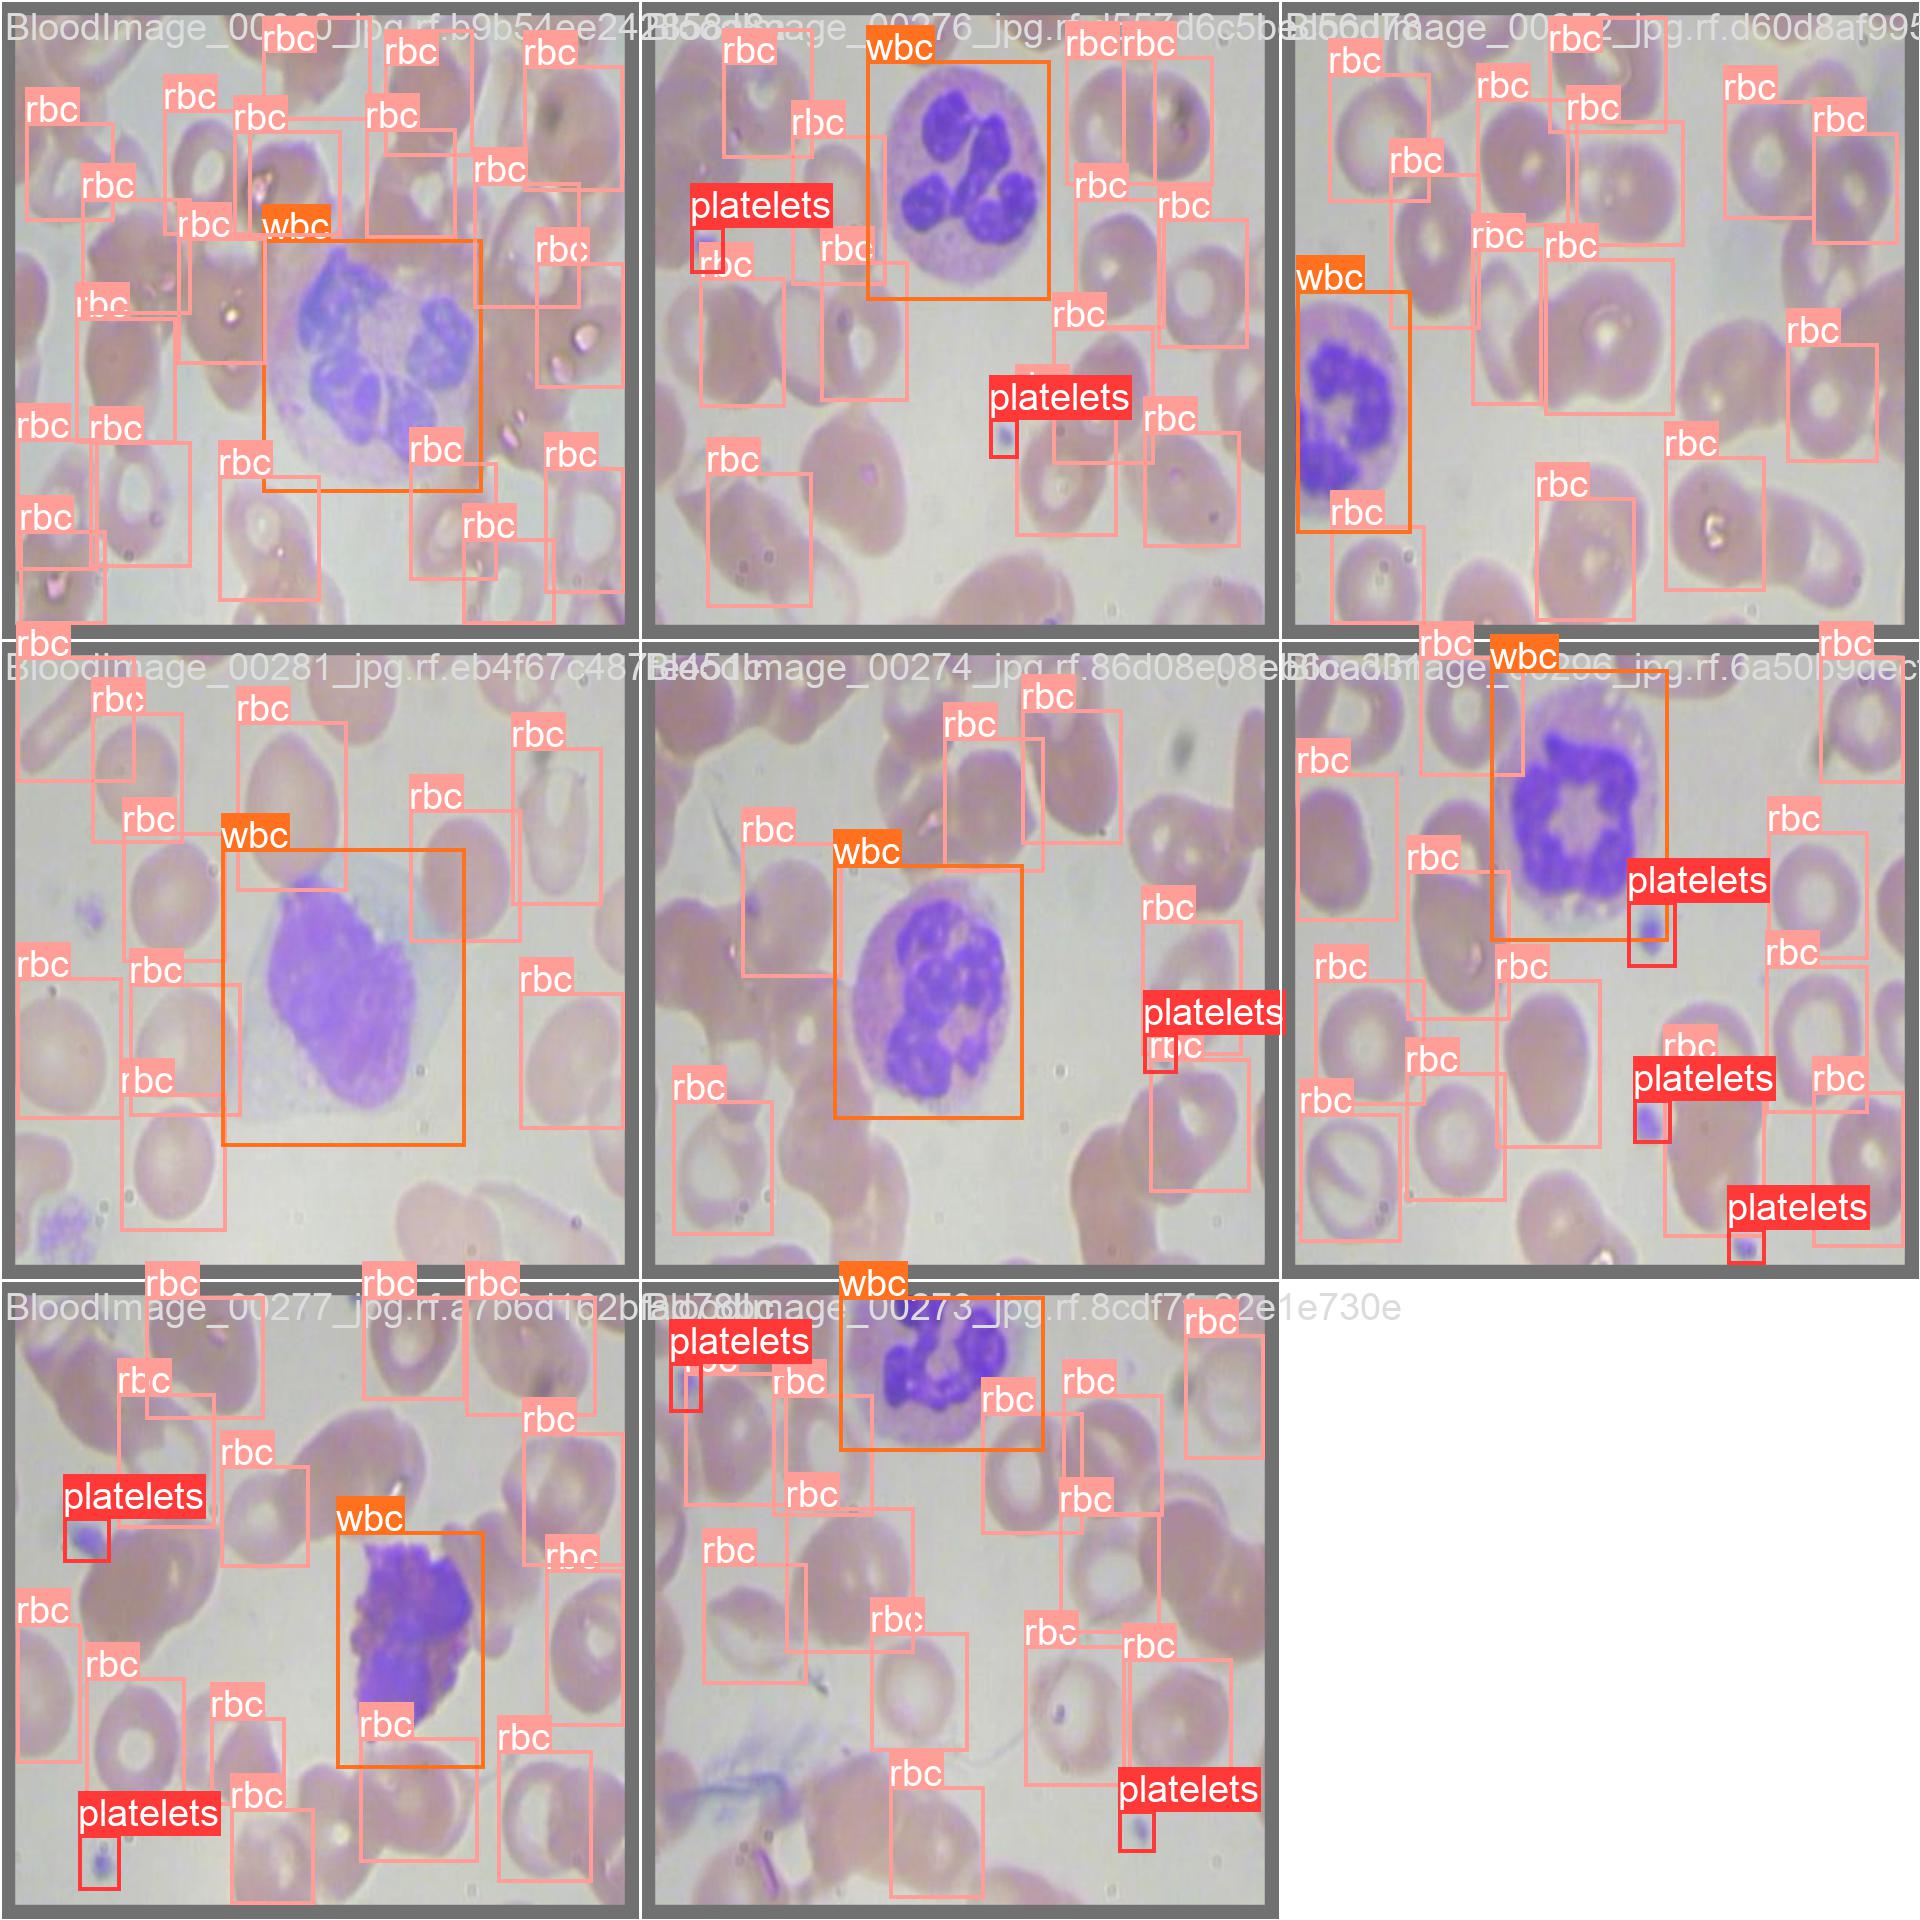 keremberke/yolov5s-blood-cell